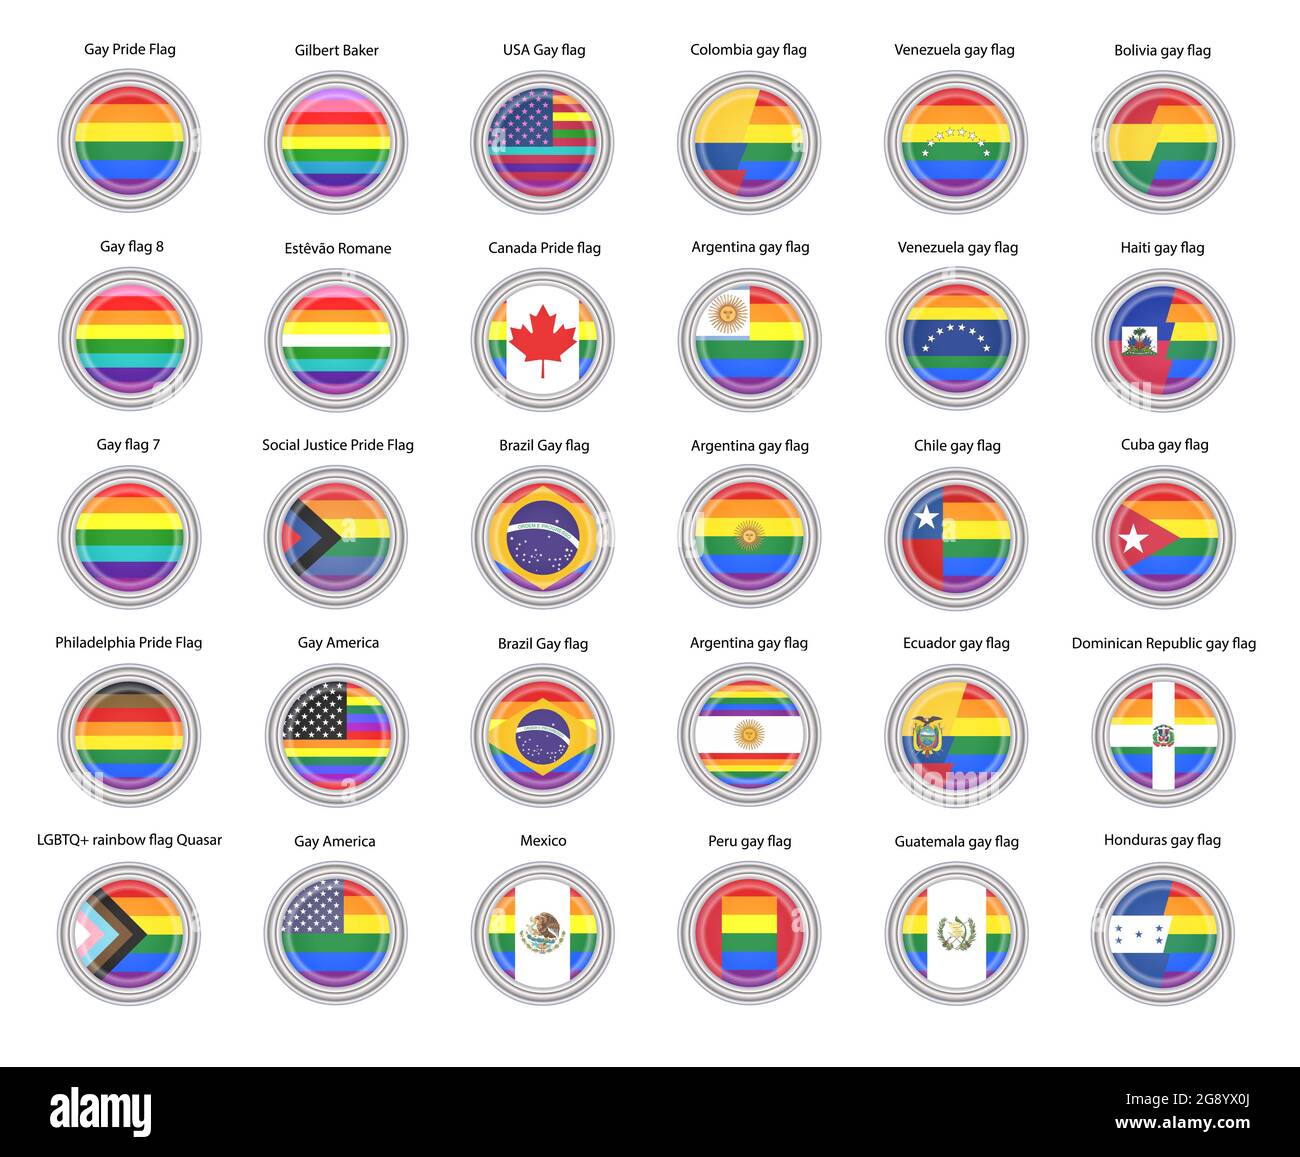 Ensemble d'icônes vectorielles. Drapeaux arc-en-ciel (LGBTQ) et drapeaux gays des pays des Amériques. Banque D'Images